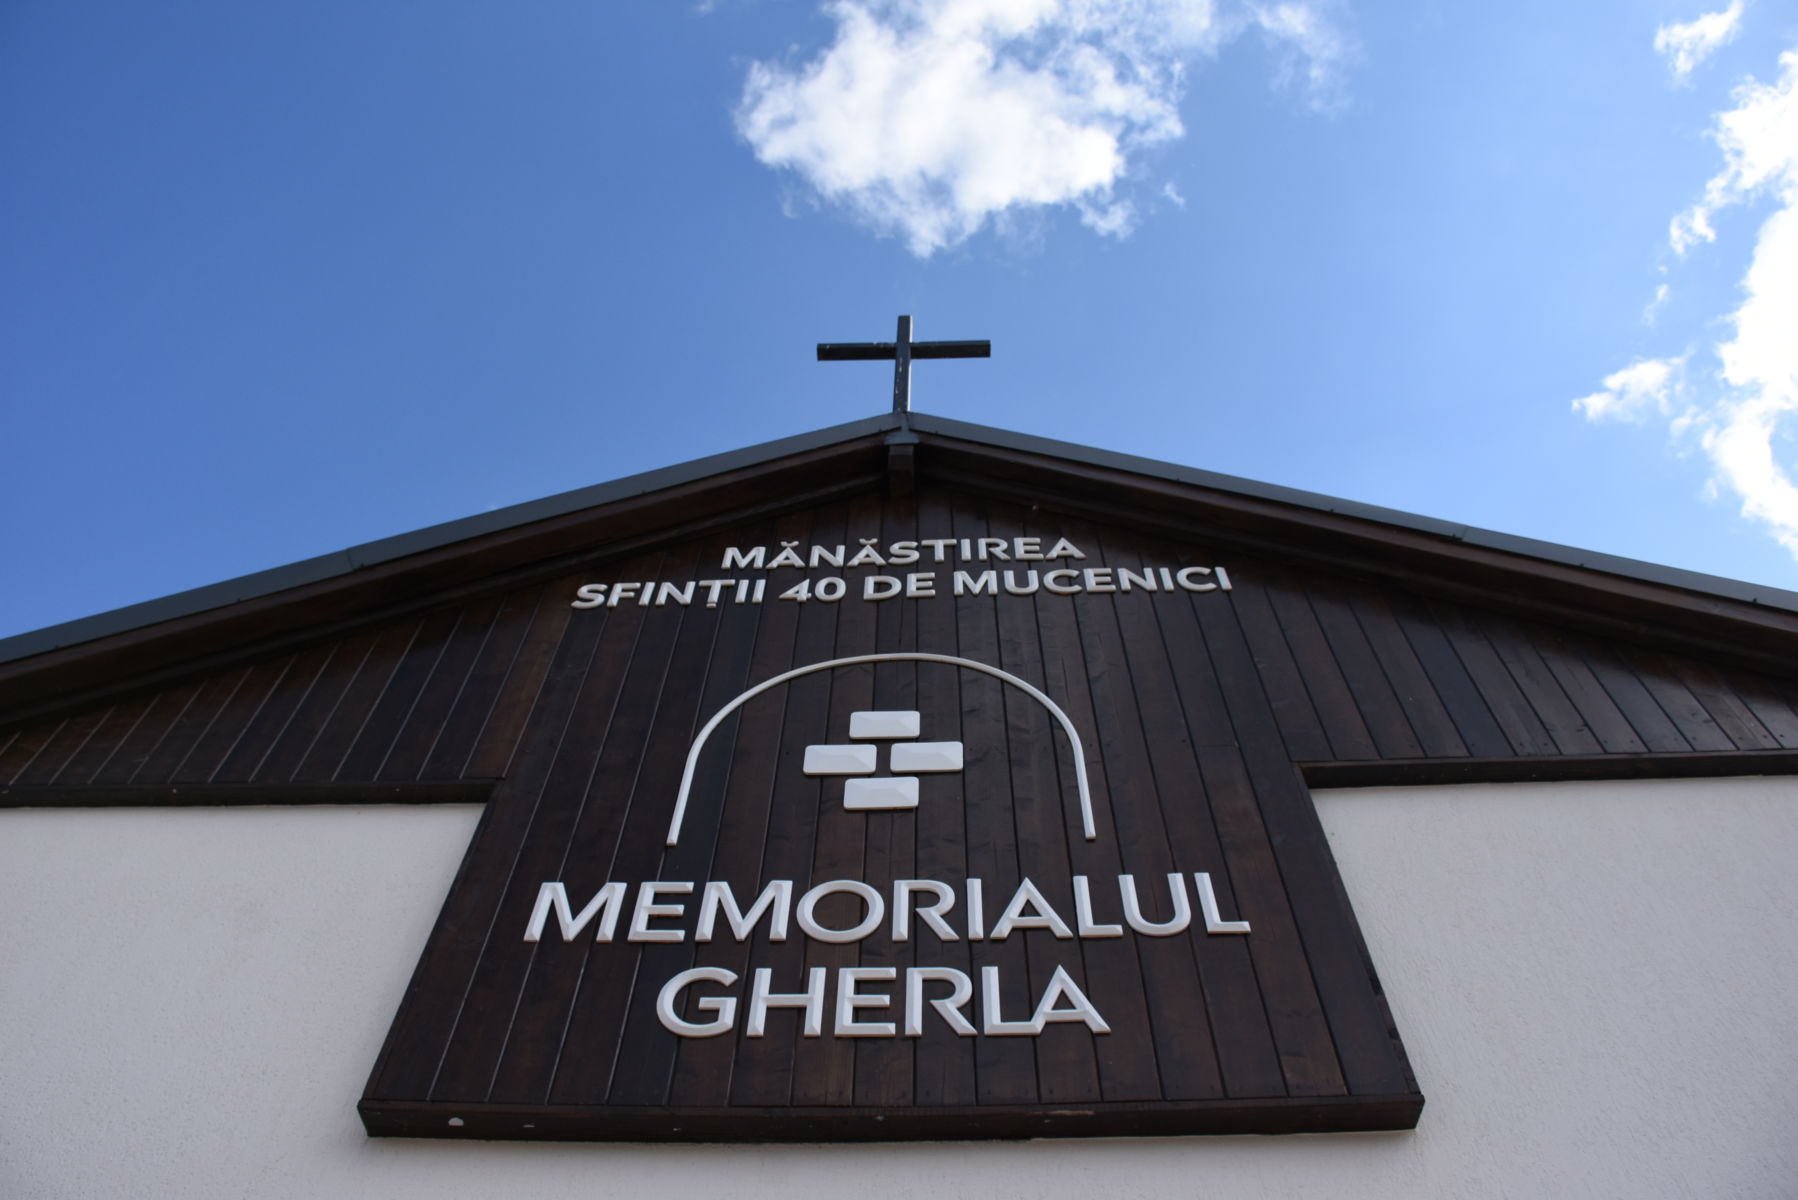 Hramul Manastirii „Sfintii 40 de Mucenici” Memorialul Gherla, Cluj